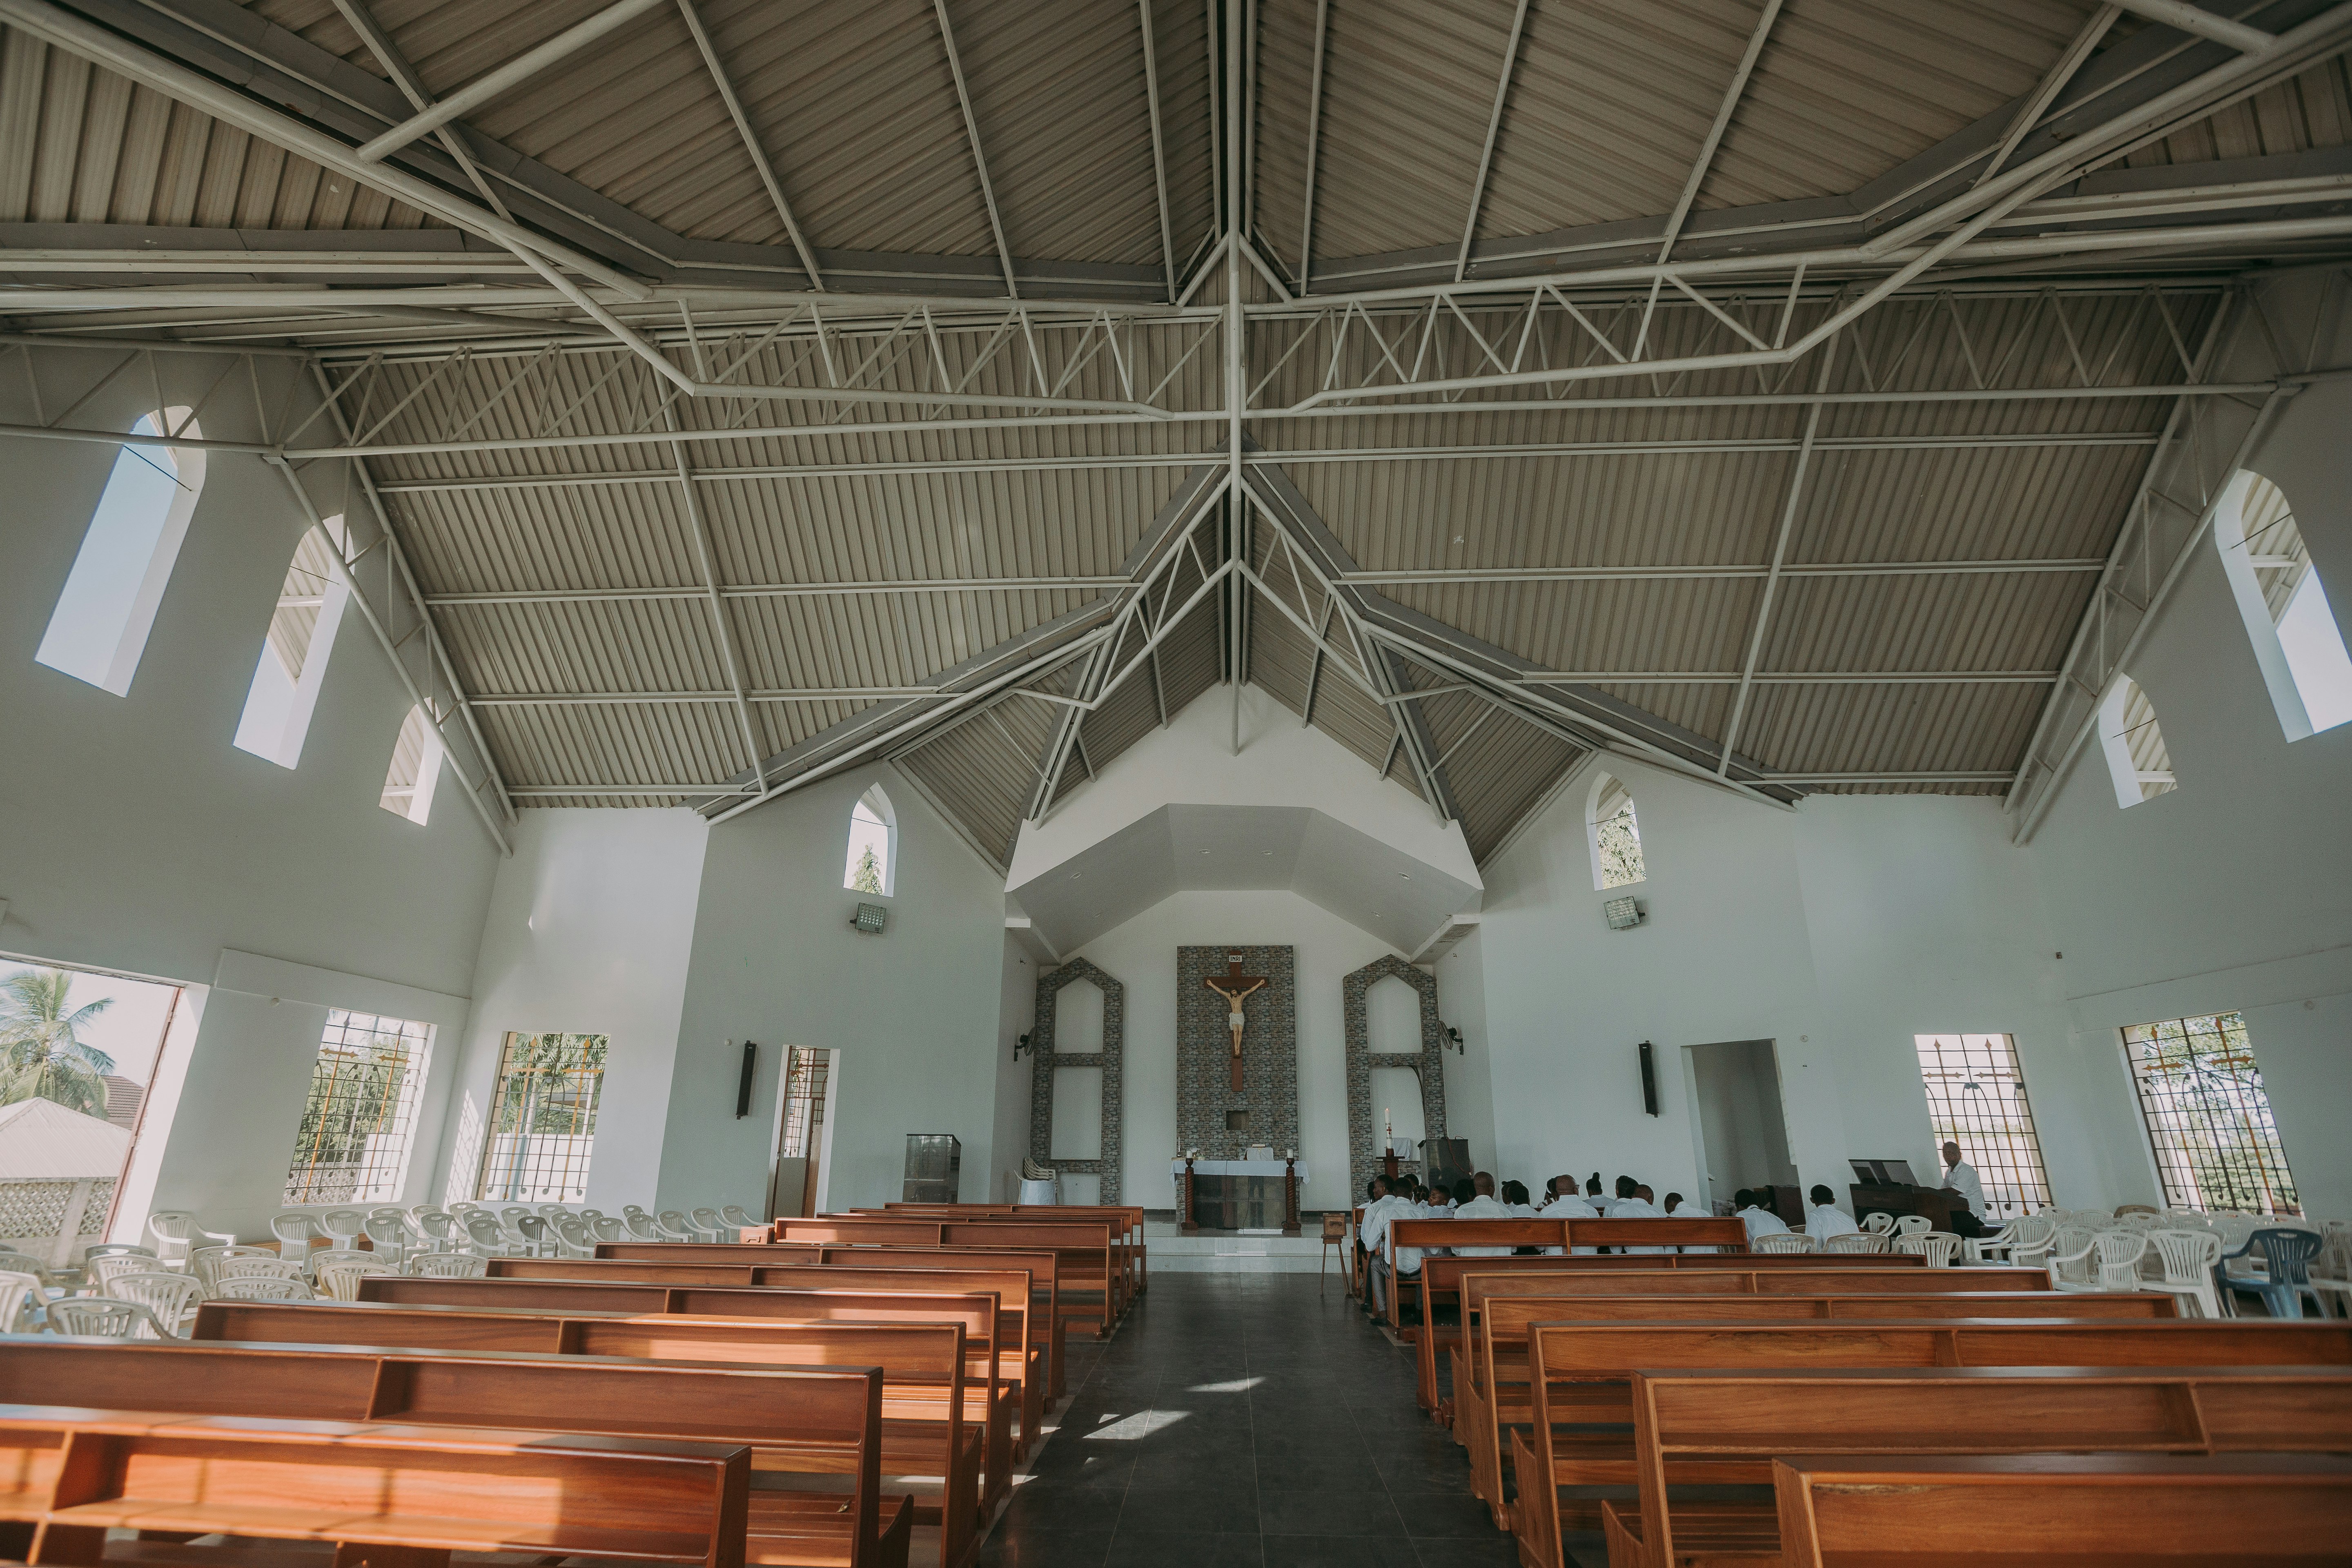 Inside a church in Dar es salaam